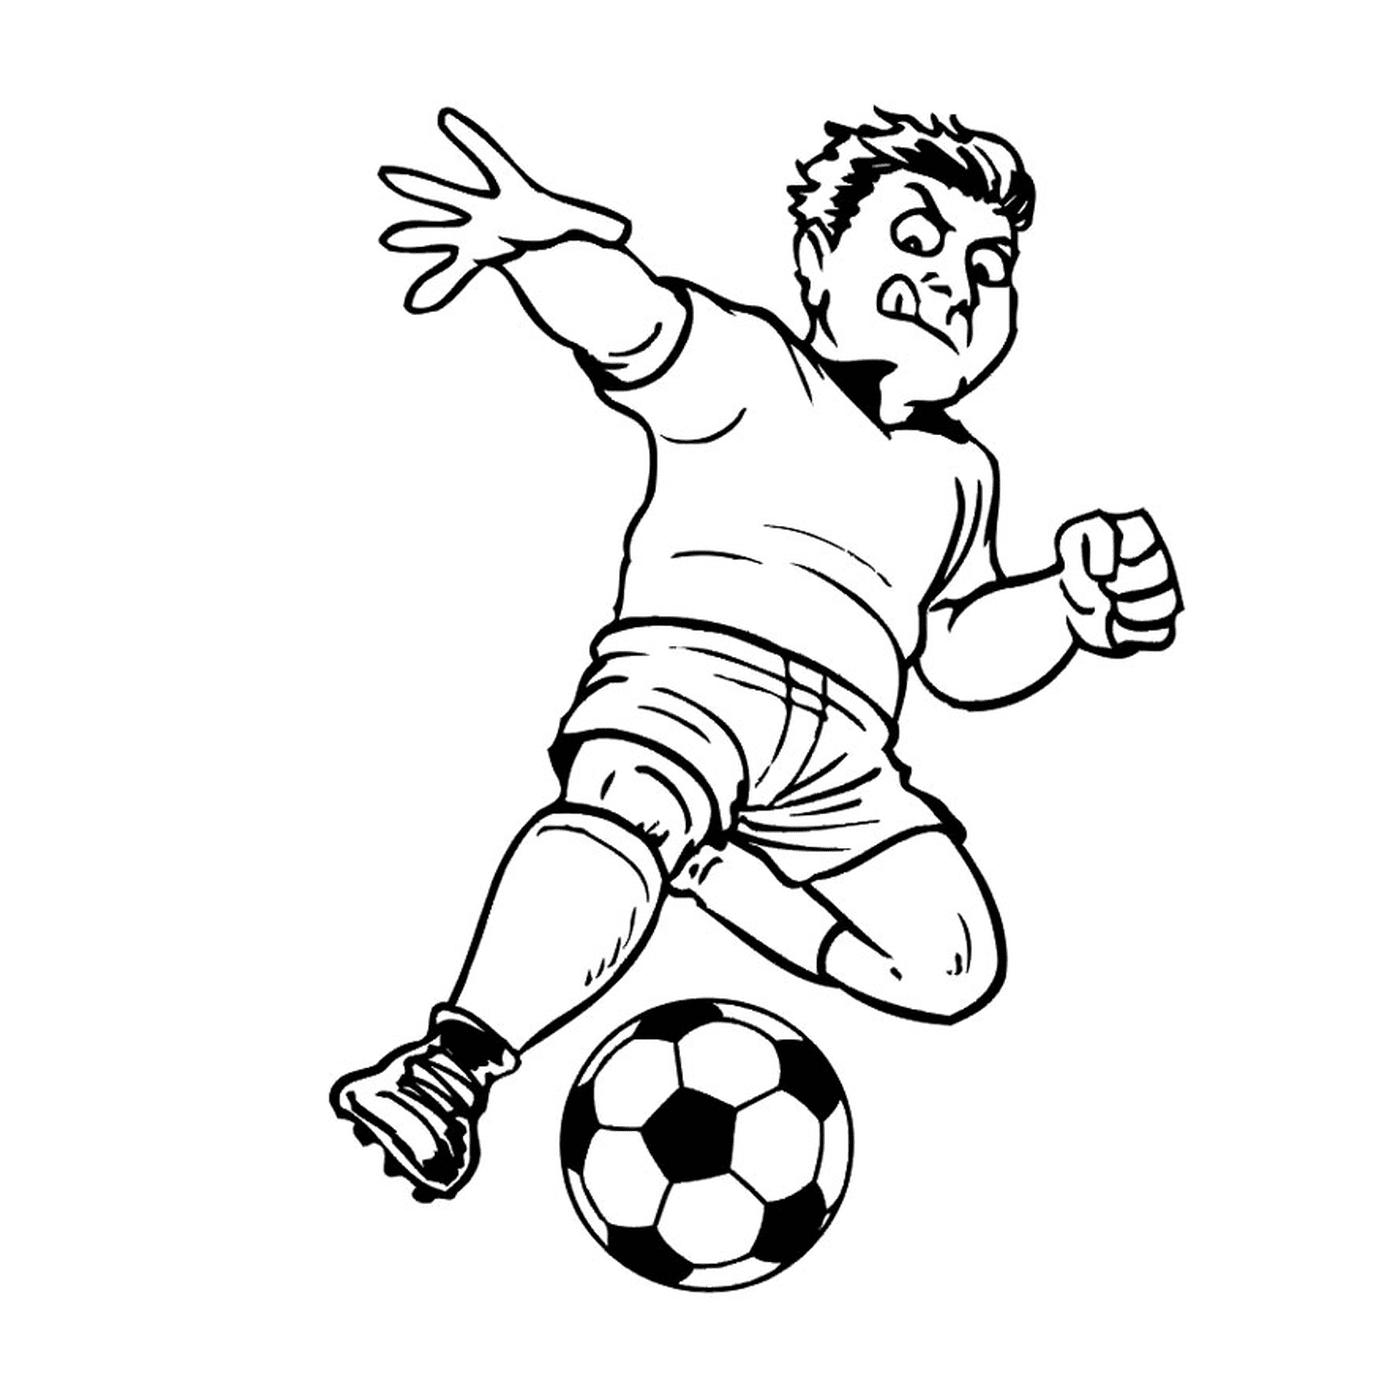   Un homme joue au football 